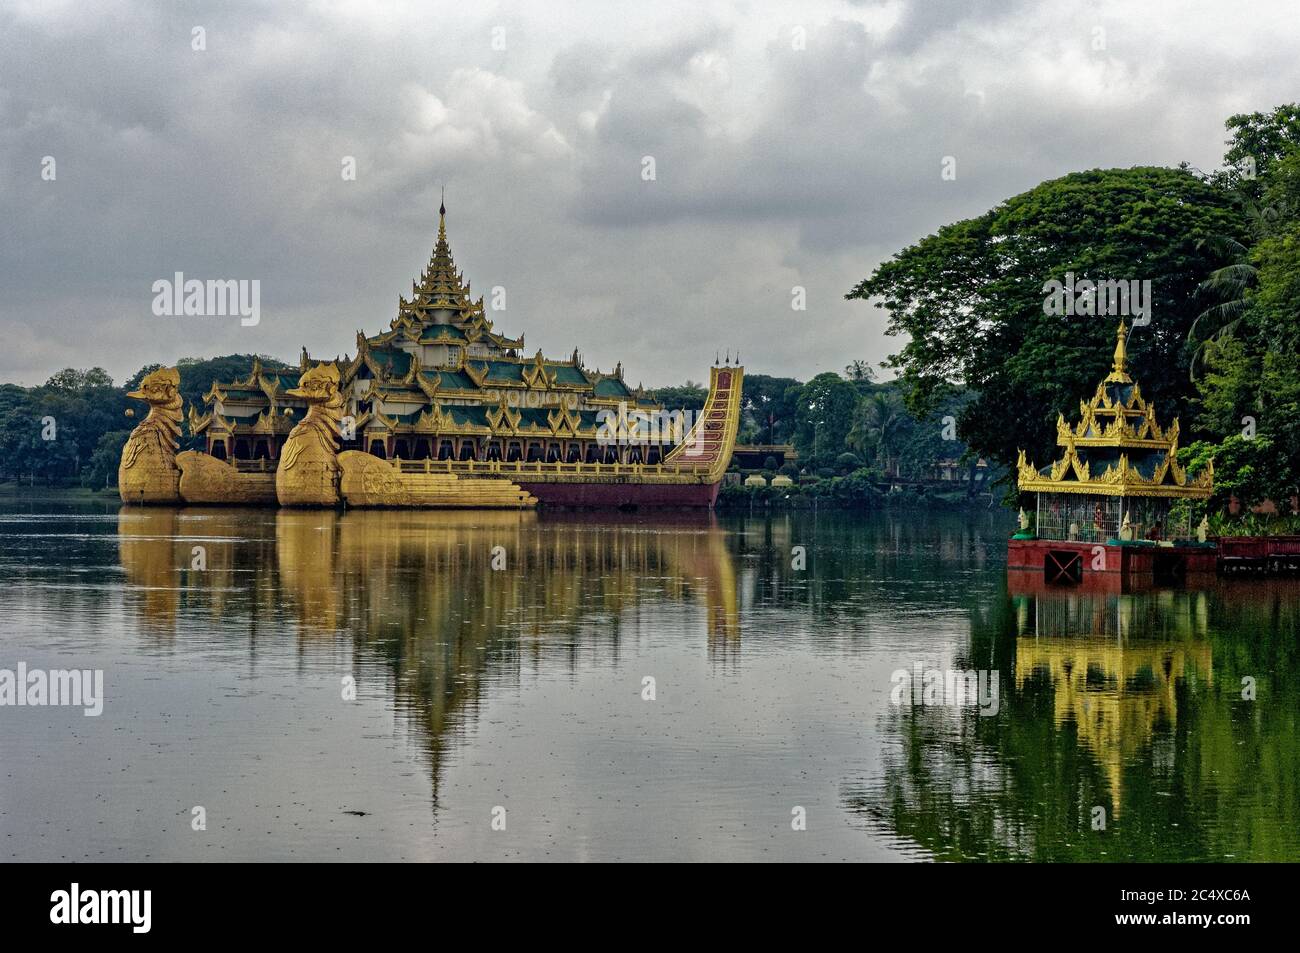 La barge royale de style Karawek sur le lac de Kandawygi, Yangon, Myanmar, anciennement Rangoon, Birmanie Banque D'Images